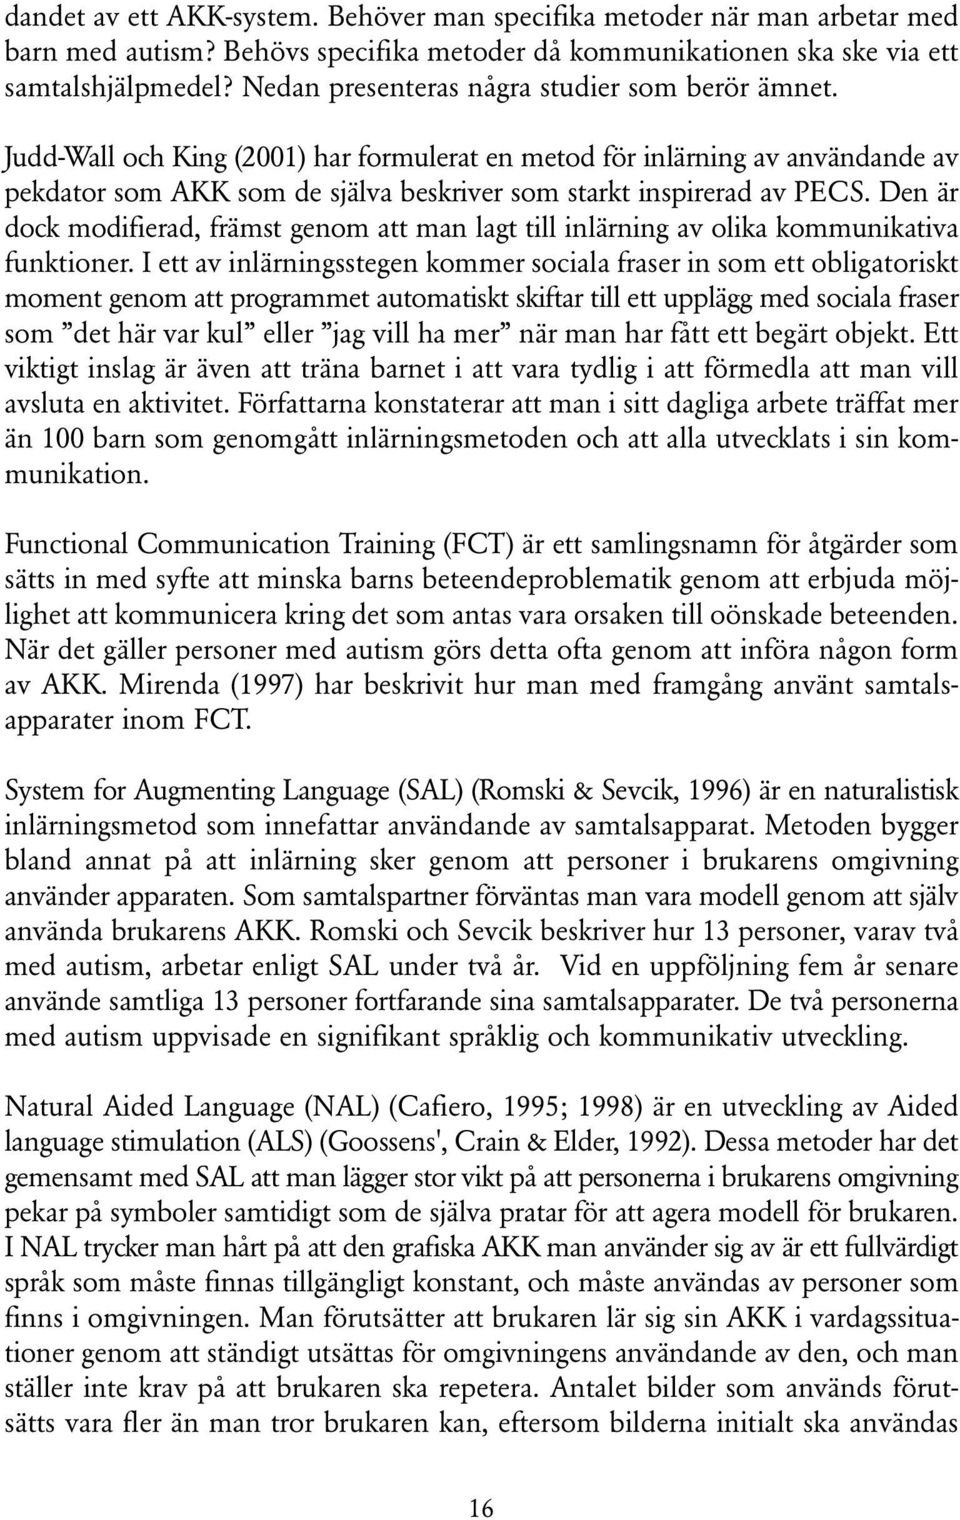 Judd-Wall och King (2001) har formulerat en metod för inlärning av användande av pekdator som AKK som de själva beskriver som starkt inspirerad av PECS.